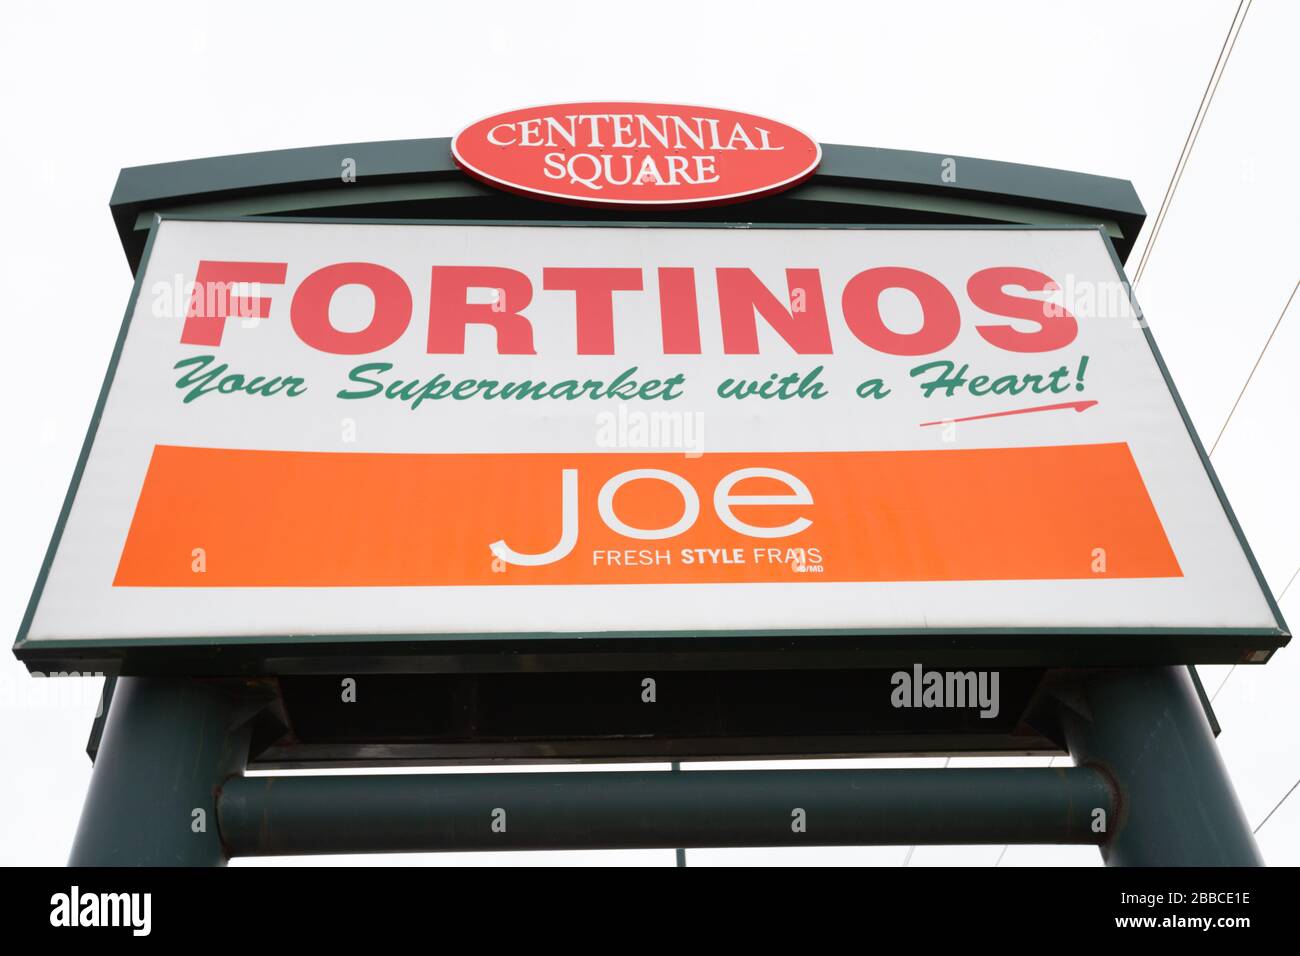 Panneau indiquant l'épicerie Fortinos. Fortinos est une chaîne de supermarchés canadienne. Banque D'Images